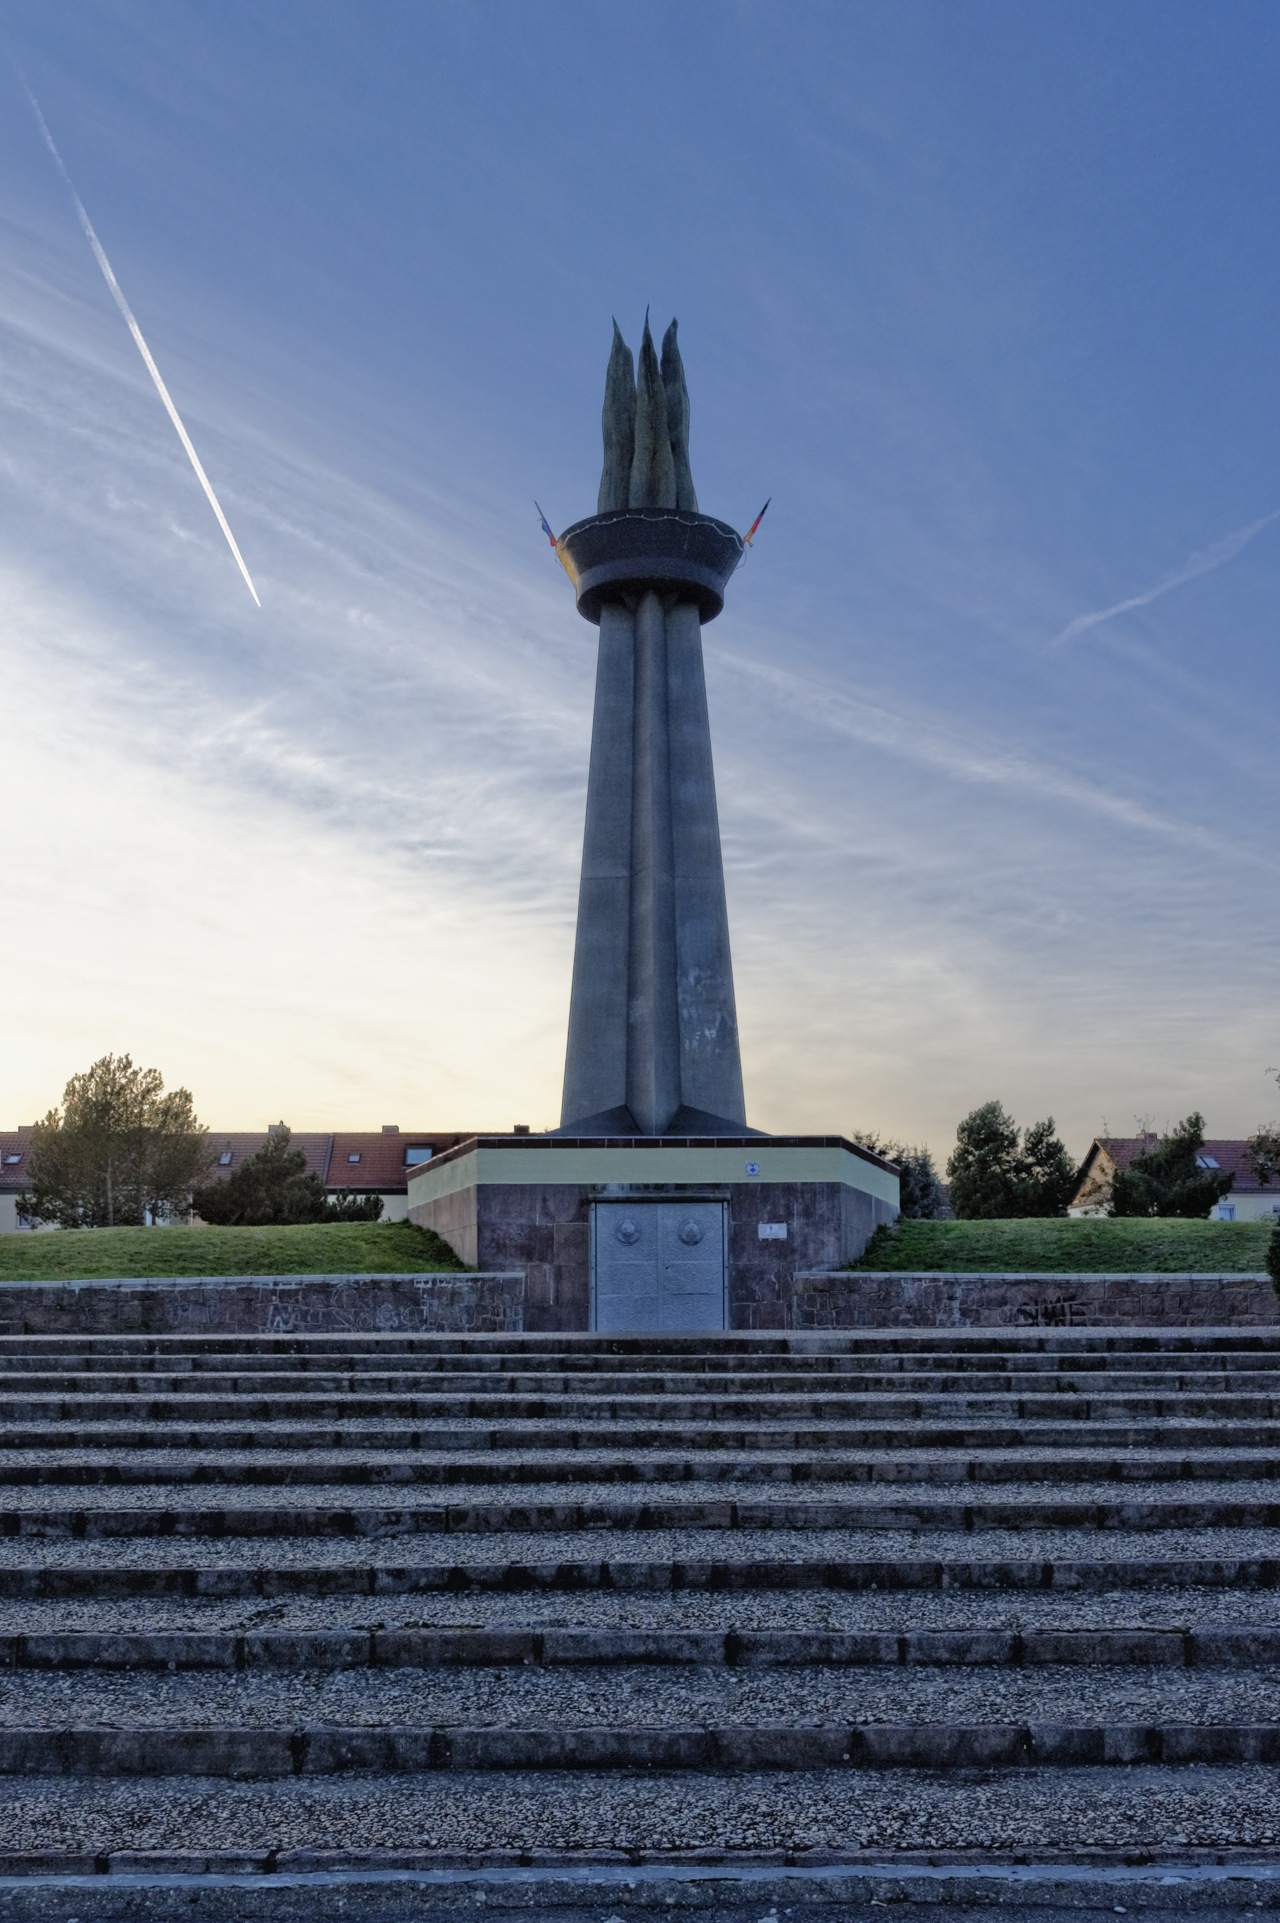 Blaue Stunde am Obelisk Flamme der Freundschaft in Hettstedt. NIKON D700 und AF-S NIKKOR 24-120 mm 1:4G ED VR.